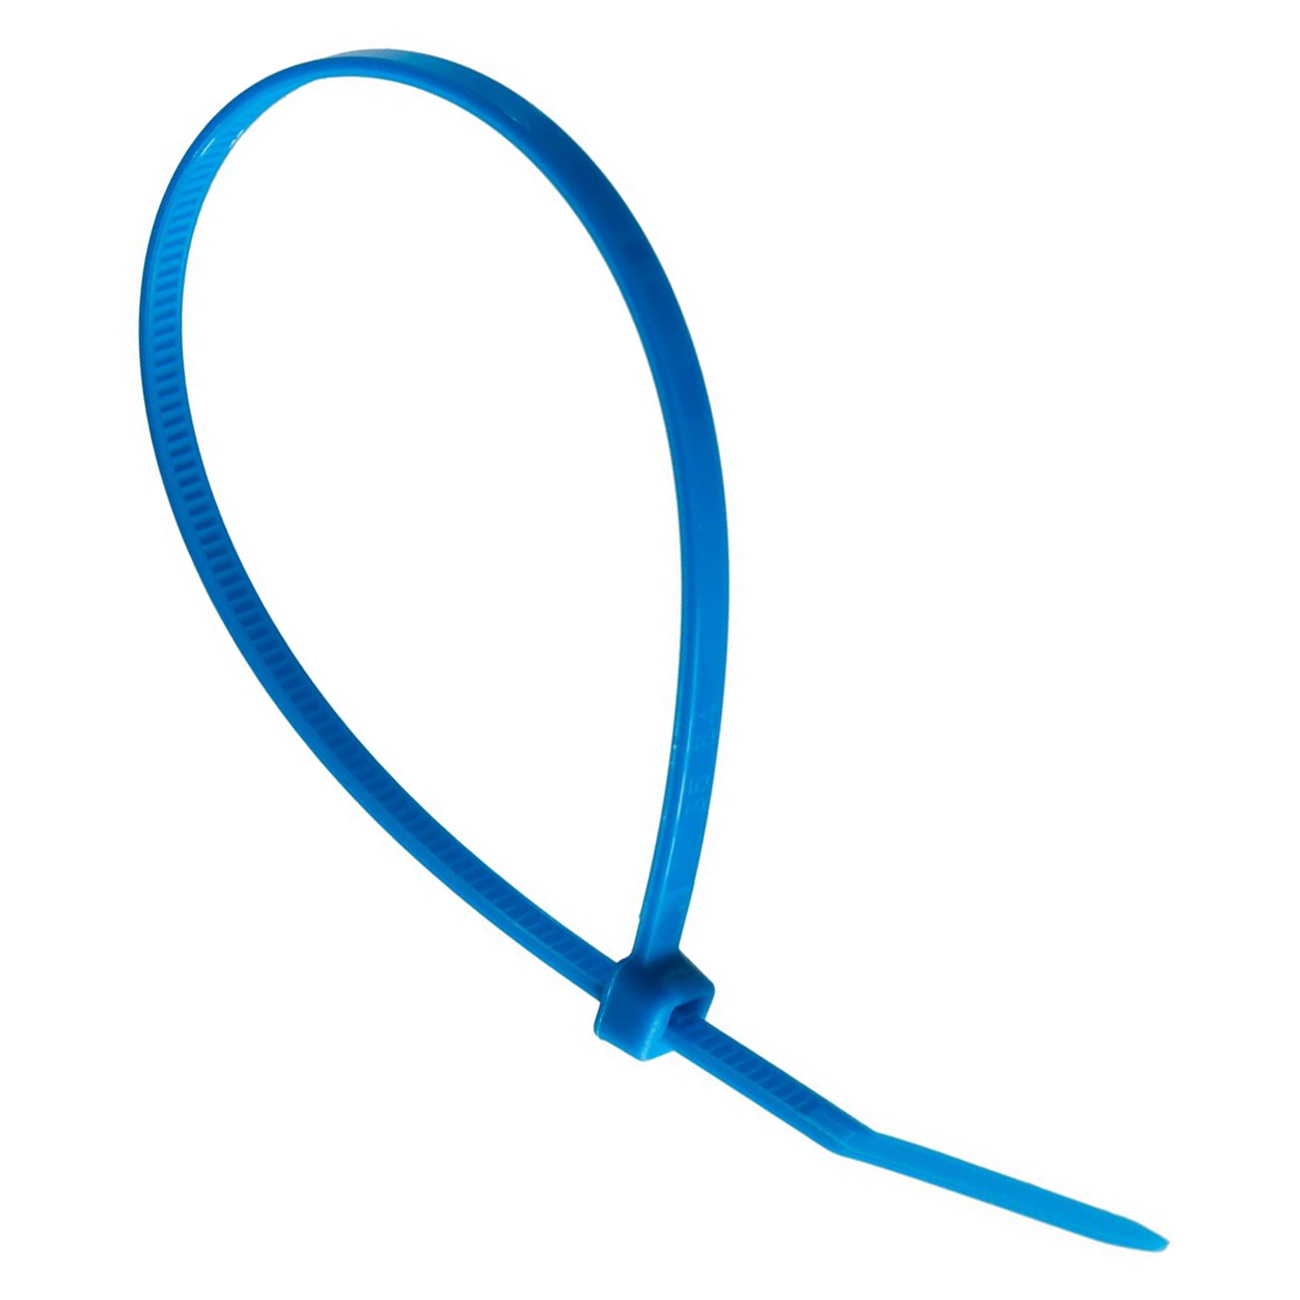 Фото Хомут кабельный стандартный Partex, 200 x 2.5 мм, синий (100 шт.) {PKB-20025-6}